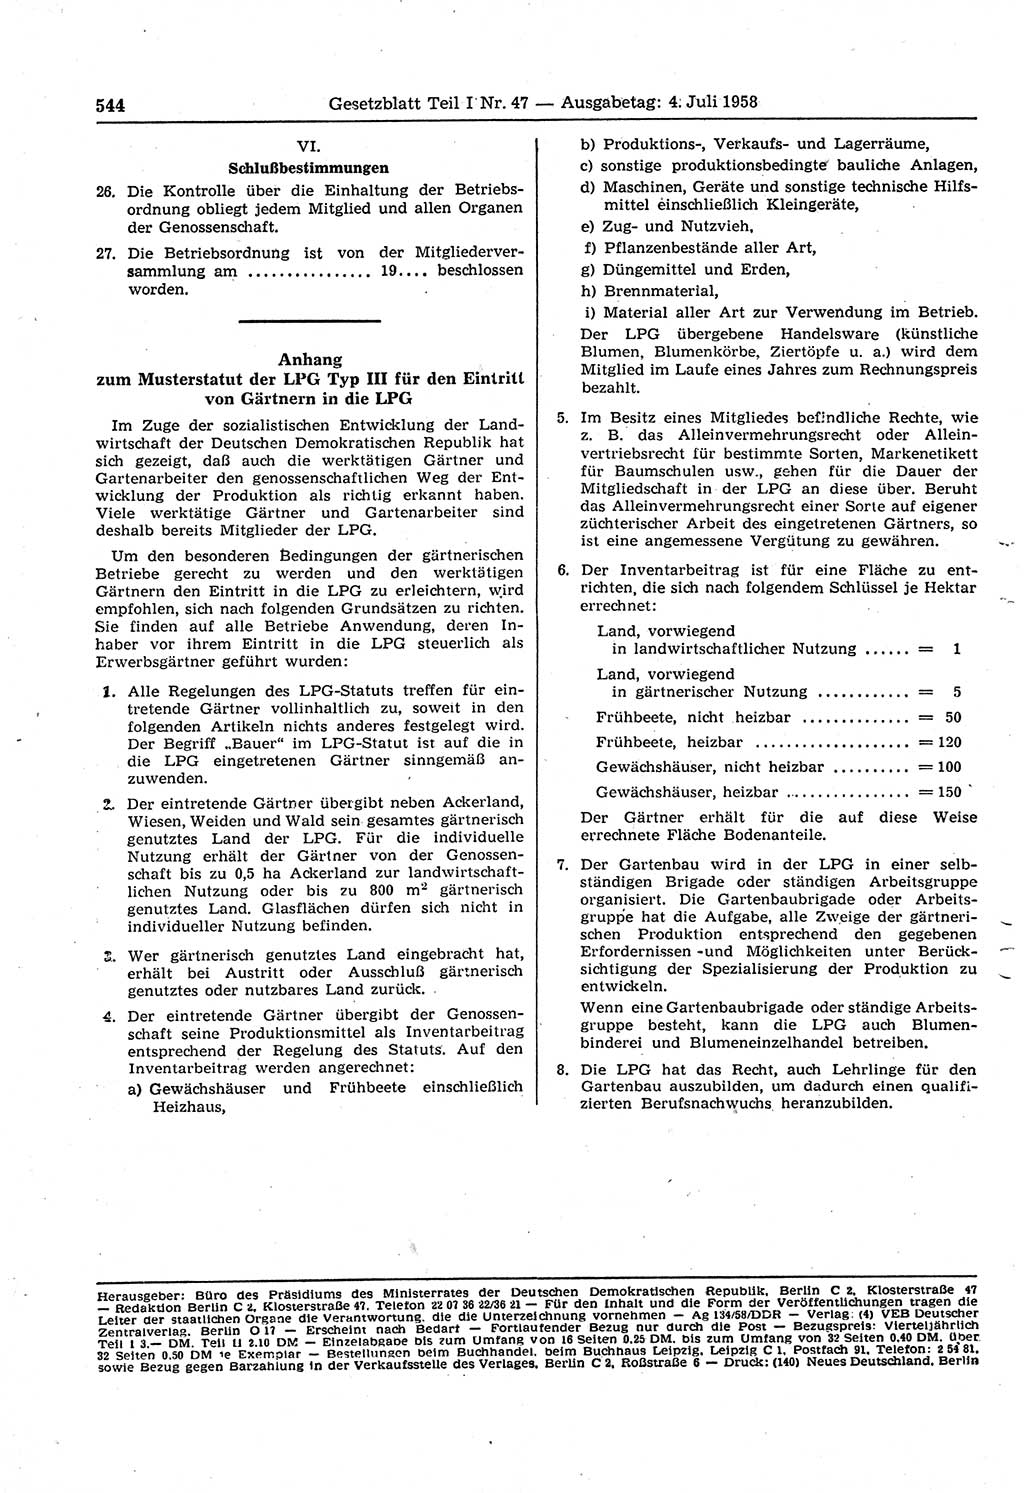 Gesetzblatt (GBl.) der Deutschen Demokratischen Republik (DDR) Teil Ⅰ 1958, Seite 544 (GBl. DDR Ⅰ 1958, S. 544)